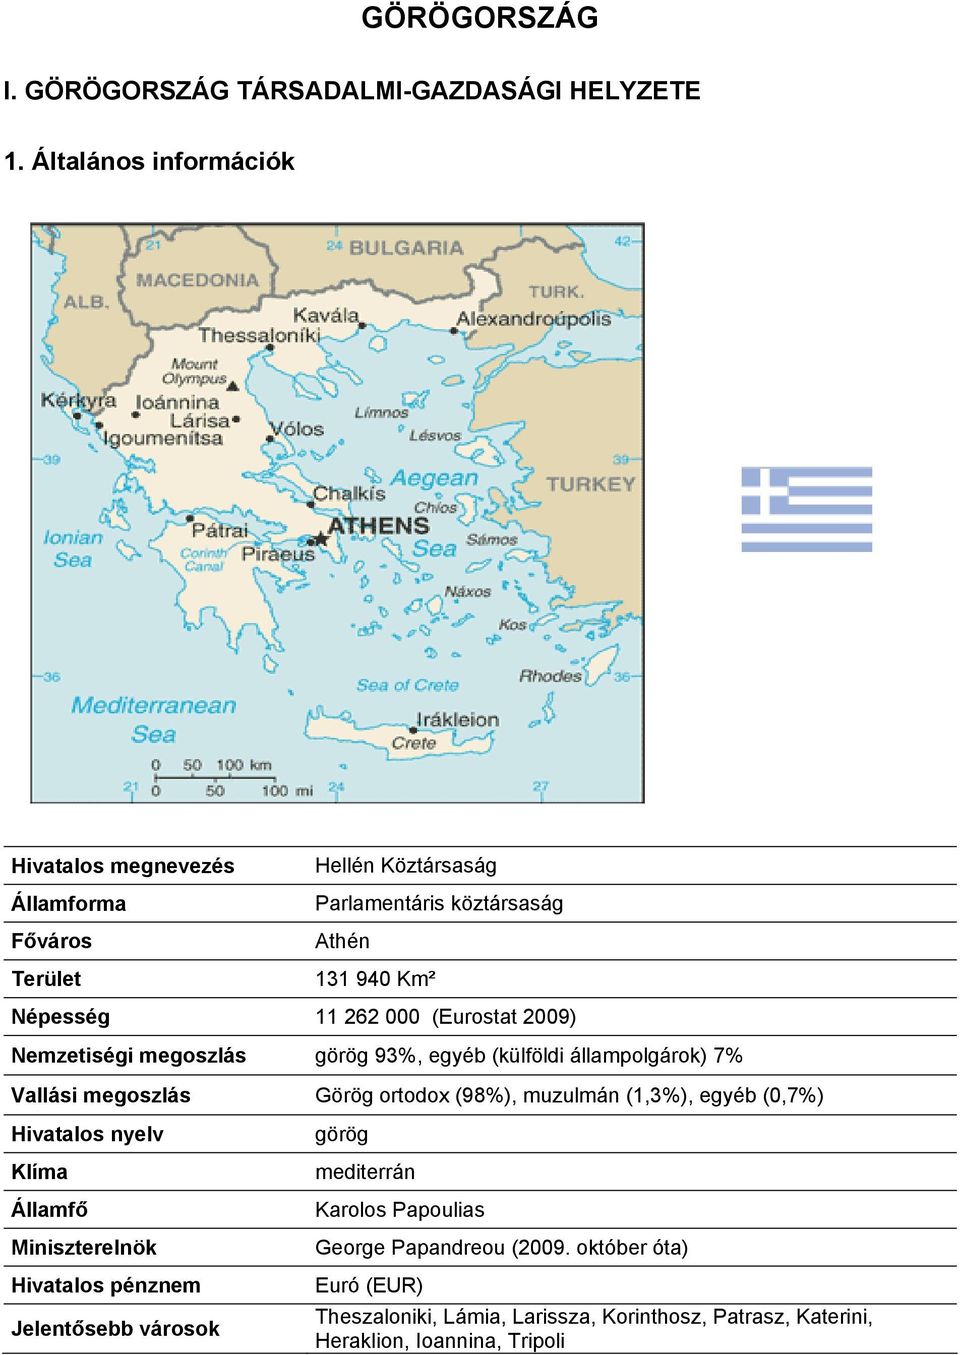 (Eurostat 2009) Nemzetiségi megoszlás görög 93%, egyéb (külföldi állampolgárok) 7% Vallási megoszlás Görög ortodox (98%), muzulmán (1,3%), egyéb (0,7%)